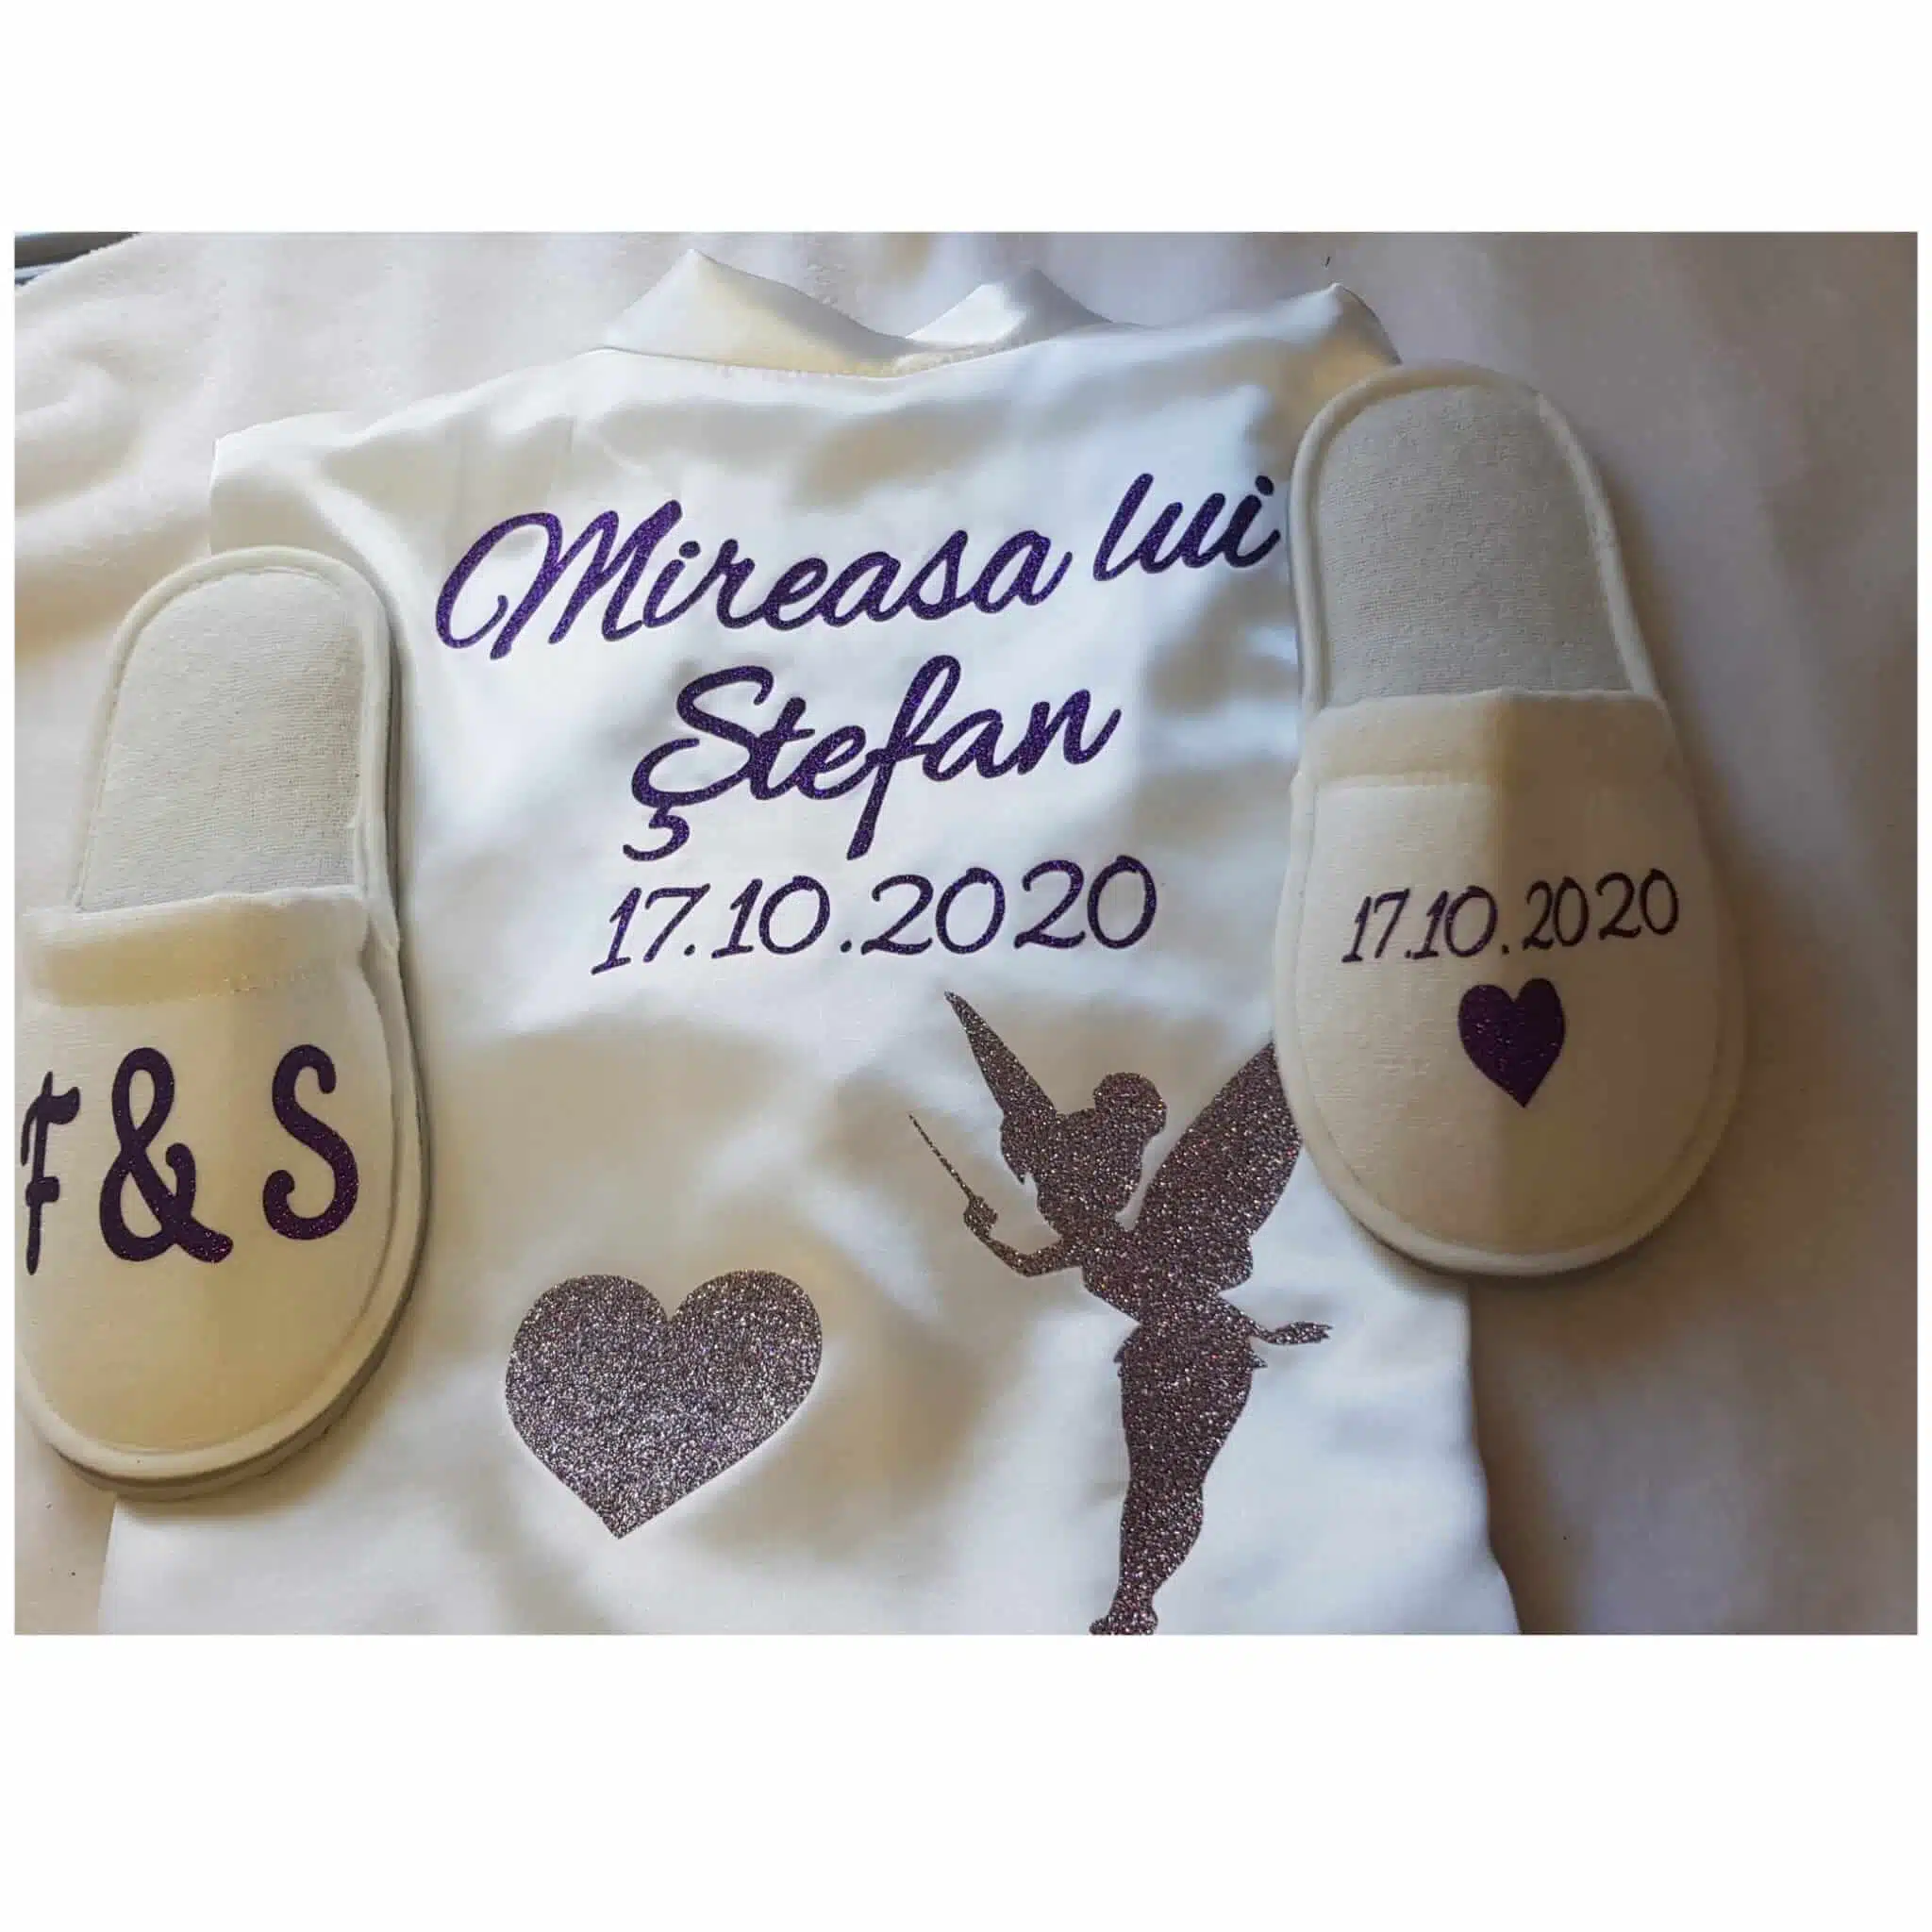 zapatillas personalizadas novia boda